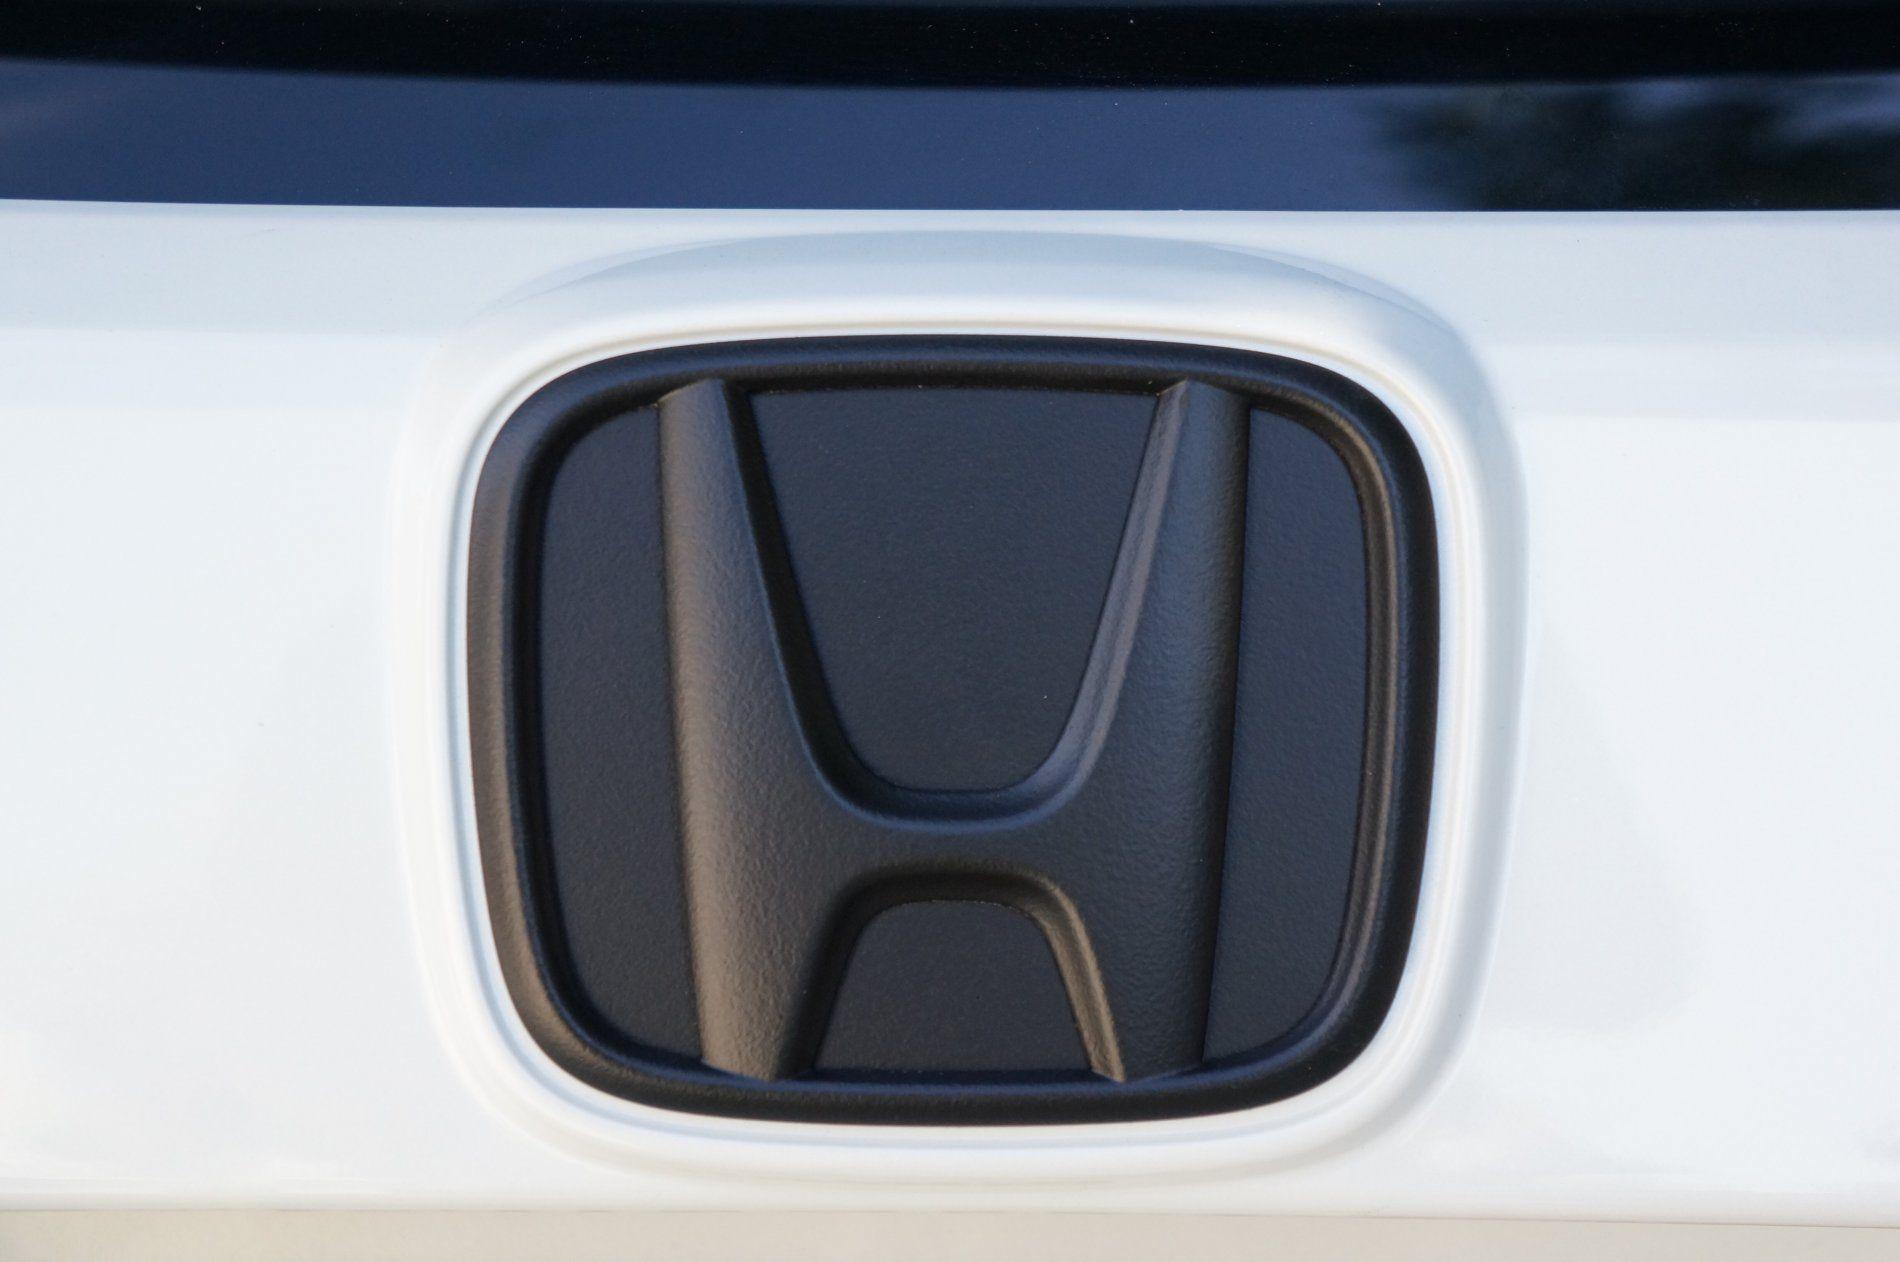 Plasti Dipped My 2017 Honda Civic Hatchback Emblem. Honda